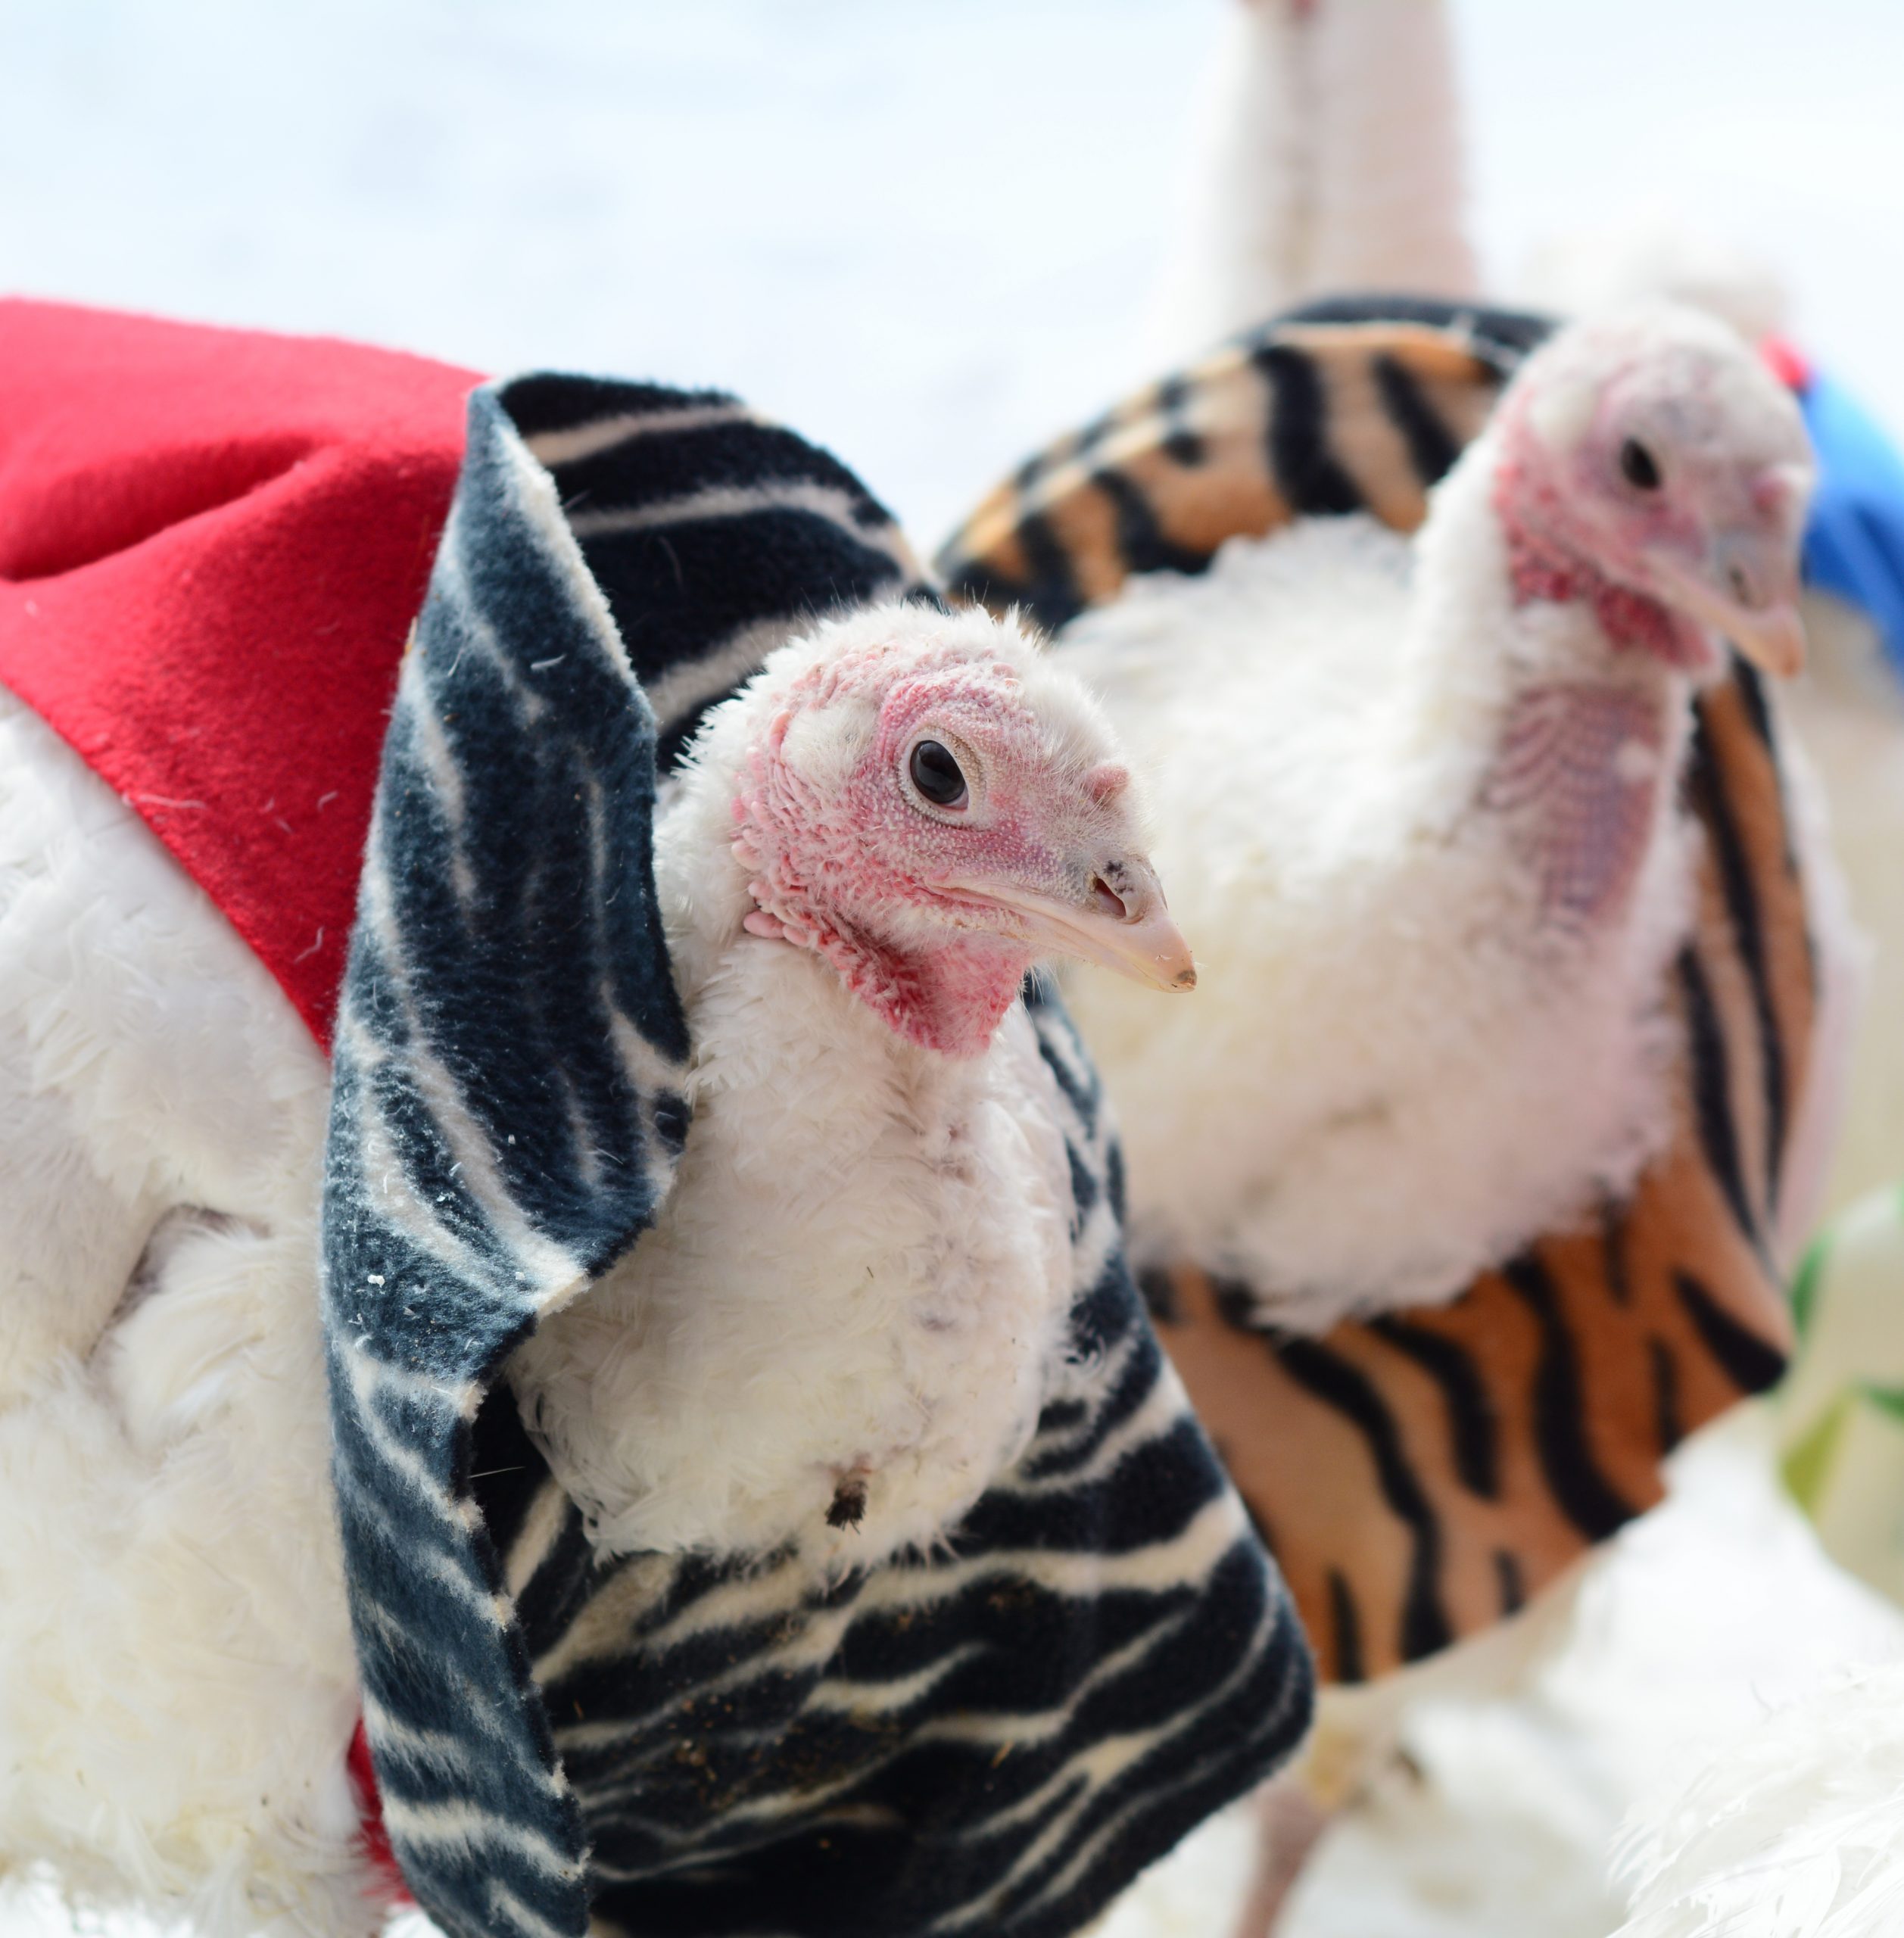 turkeys in sweaters photo by Farm Sanctuary